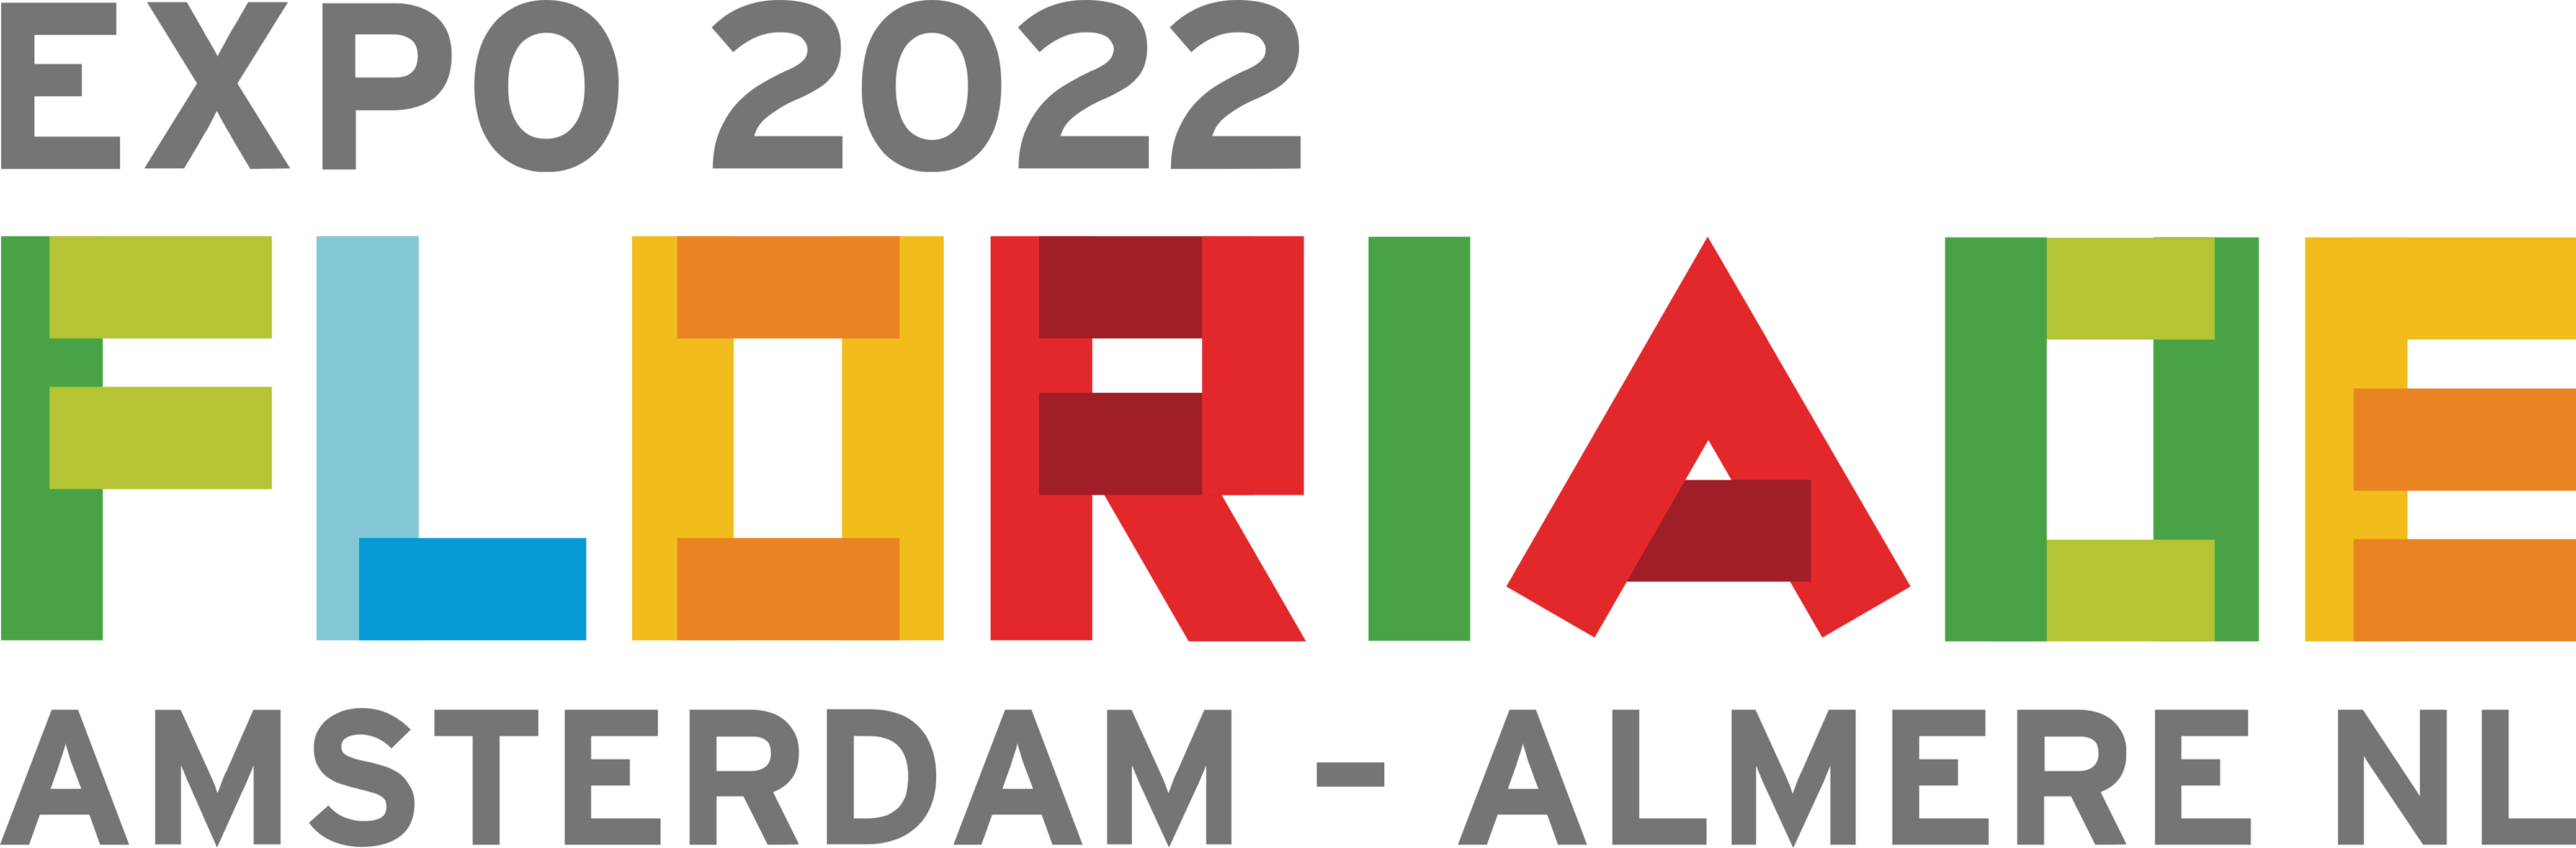 Floriade Expo 2022 Logo